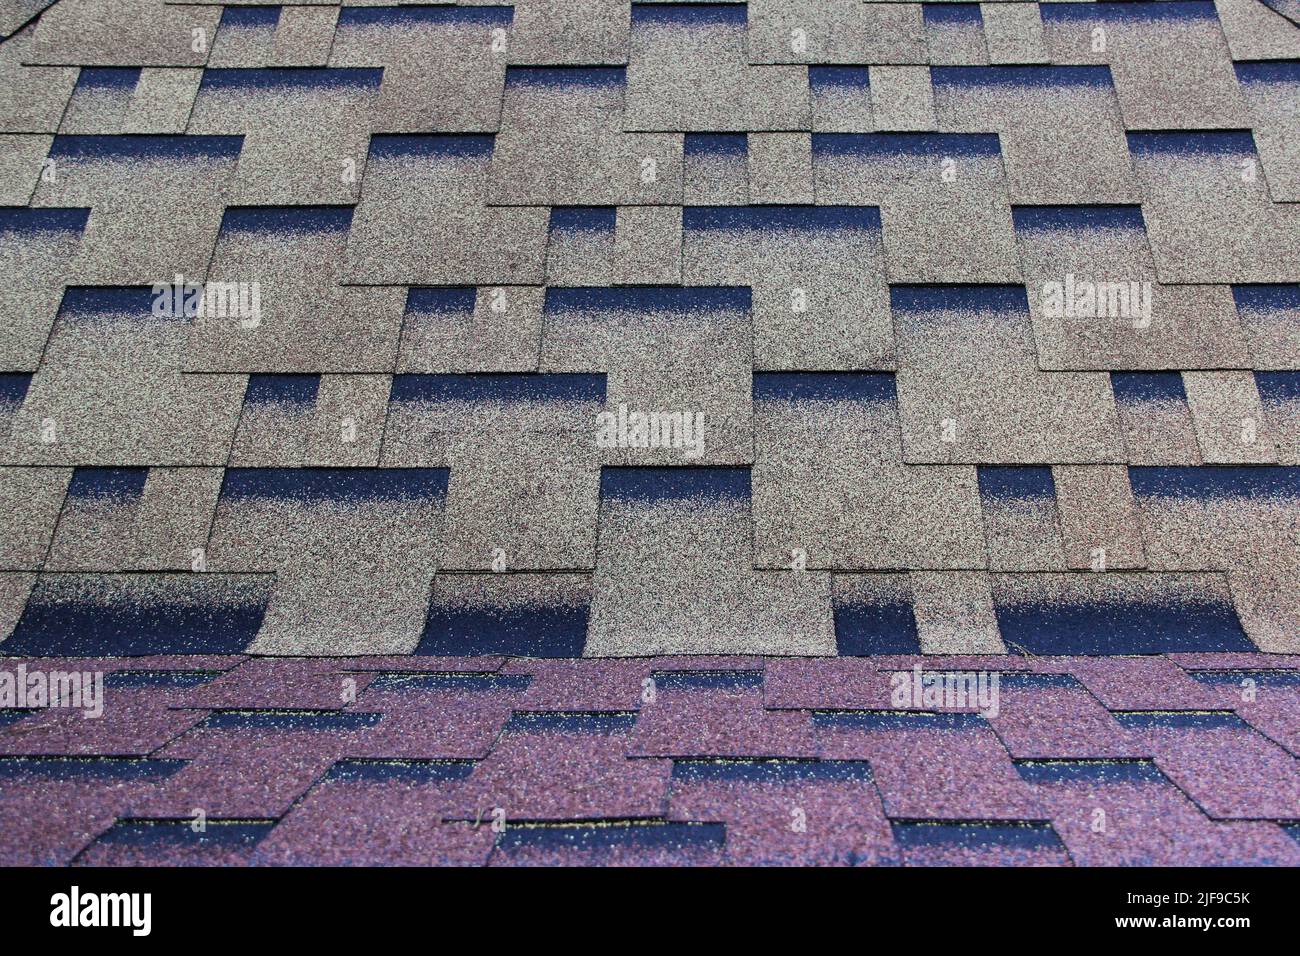 Asphaltdach in einem symmetrischen Muster. Verbundschindeln. Sich wiederholende Kachel. Stockfoto